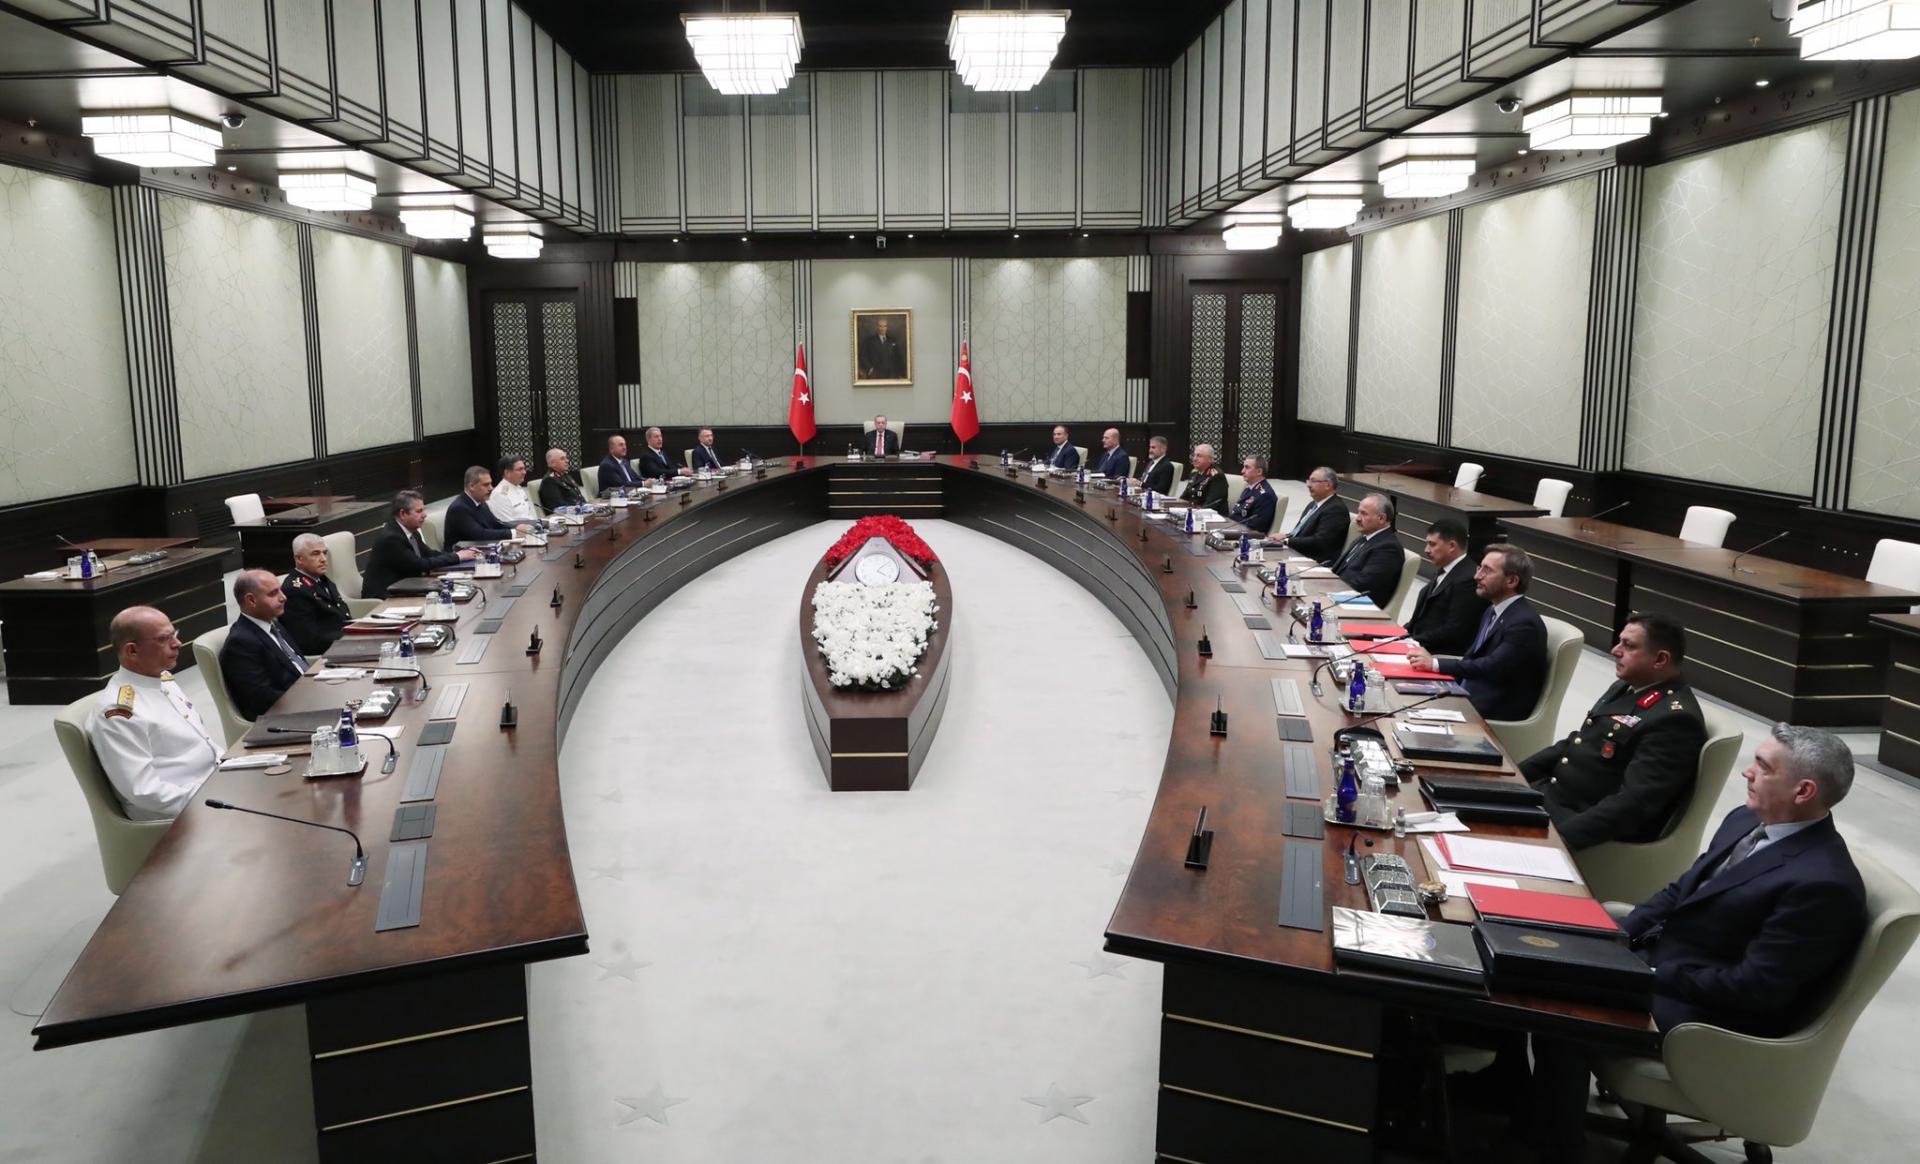 Το Συμβούλιο Εθνικής Ασφαλείας συνεδρίασε υπό την προεδρία του Ερντογάν